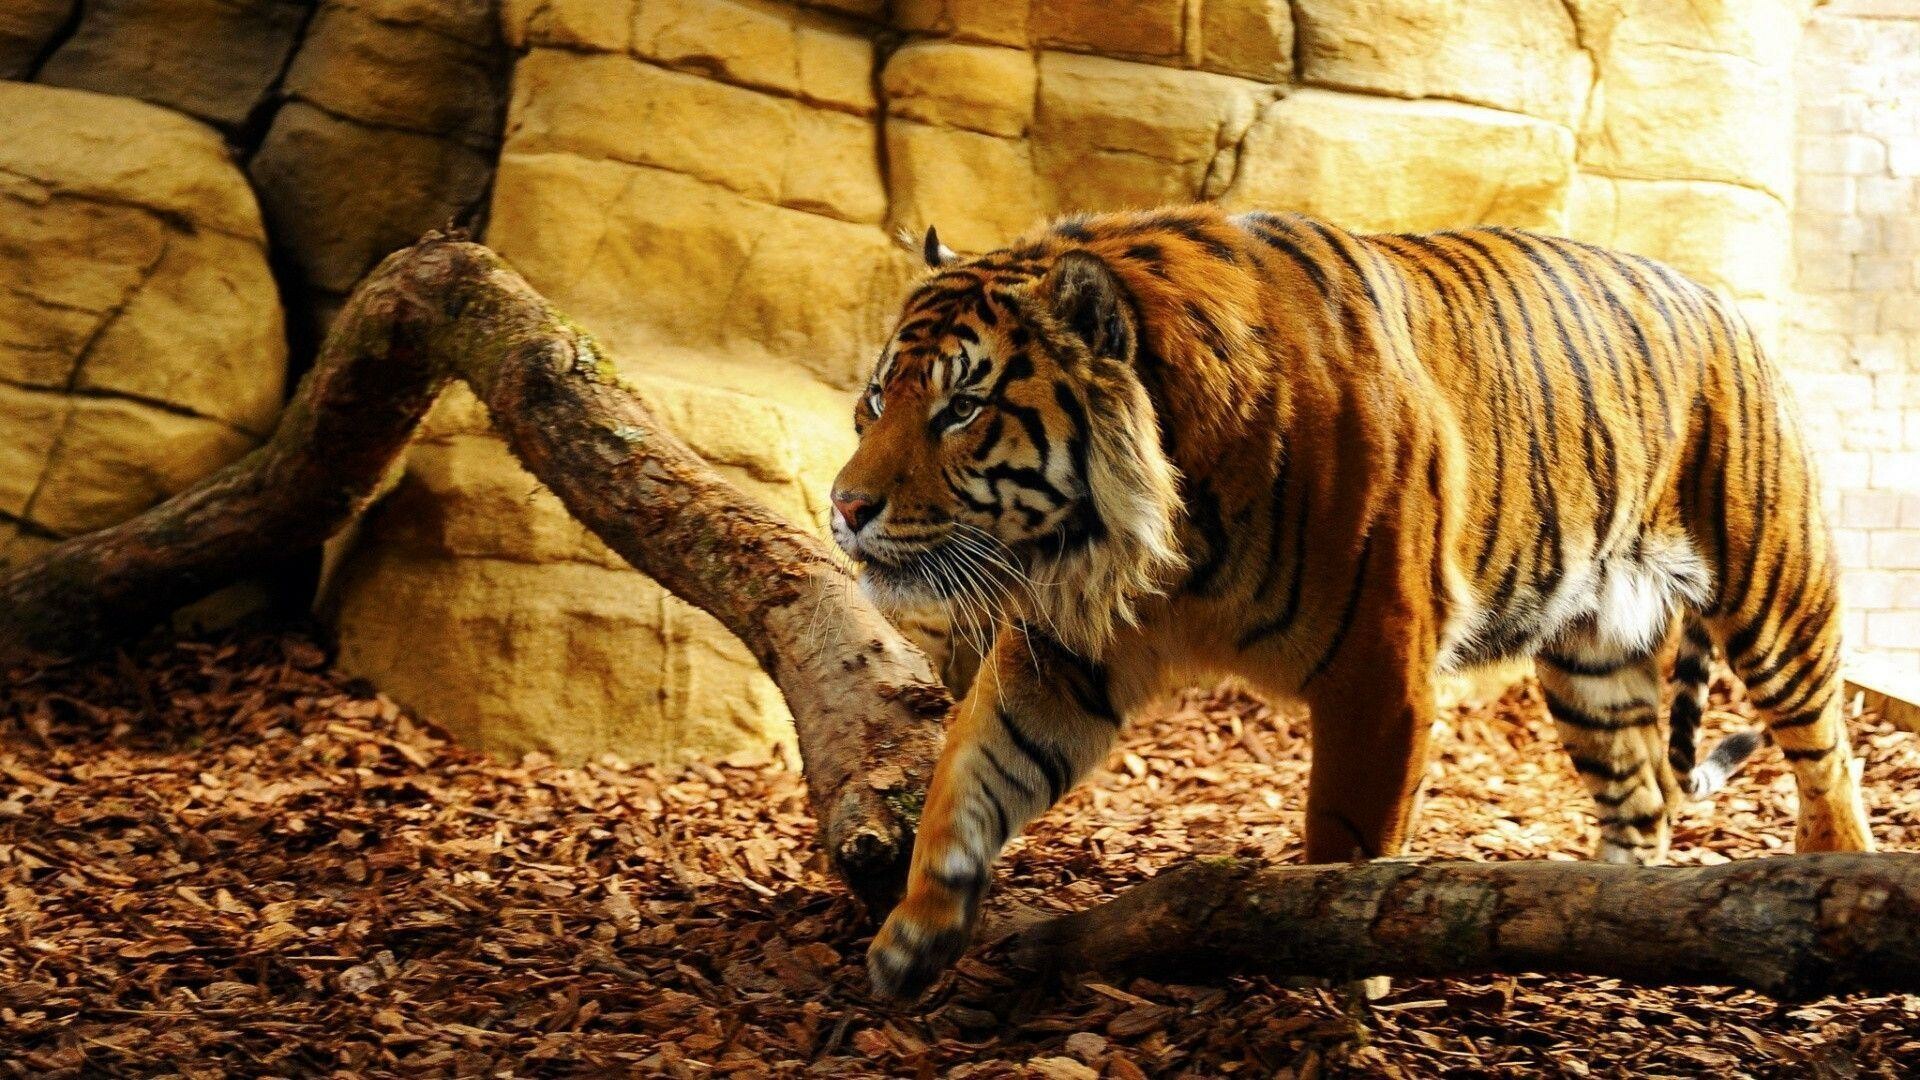 Severe Tiger on the hunt 4K wallpaper download